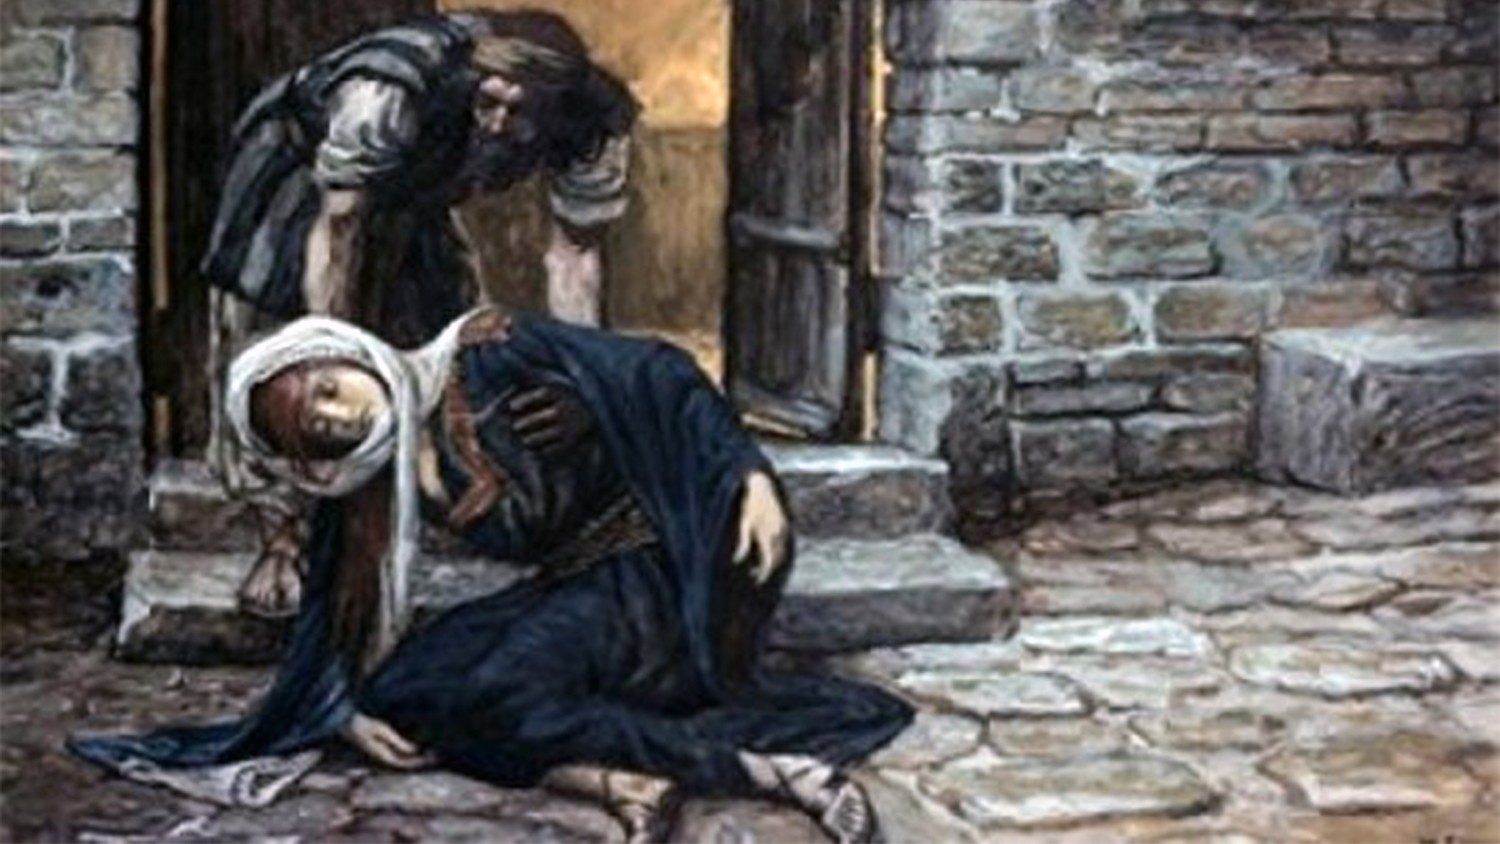 Mengatasi Ketidakadilan – Ketidakadilan orang Lewi